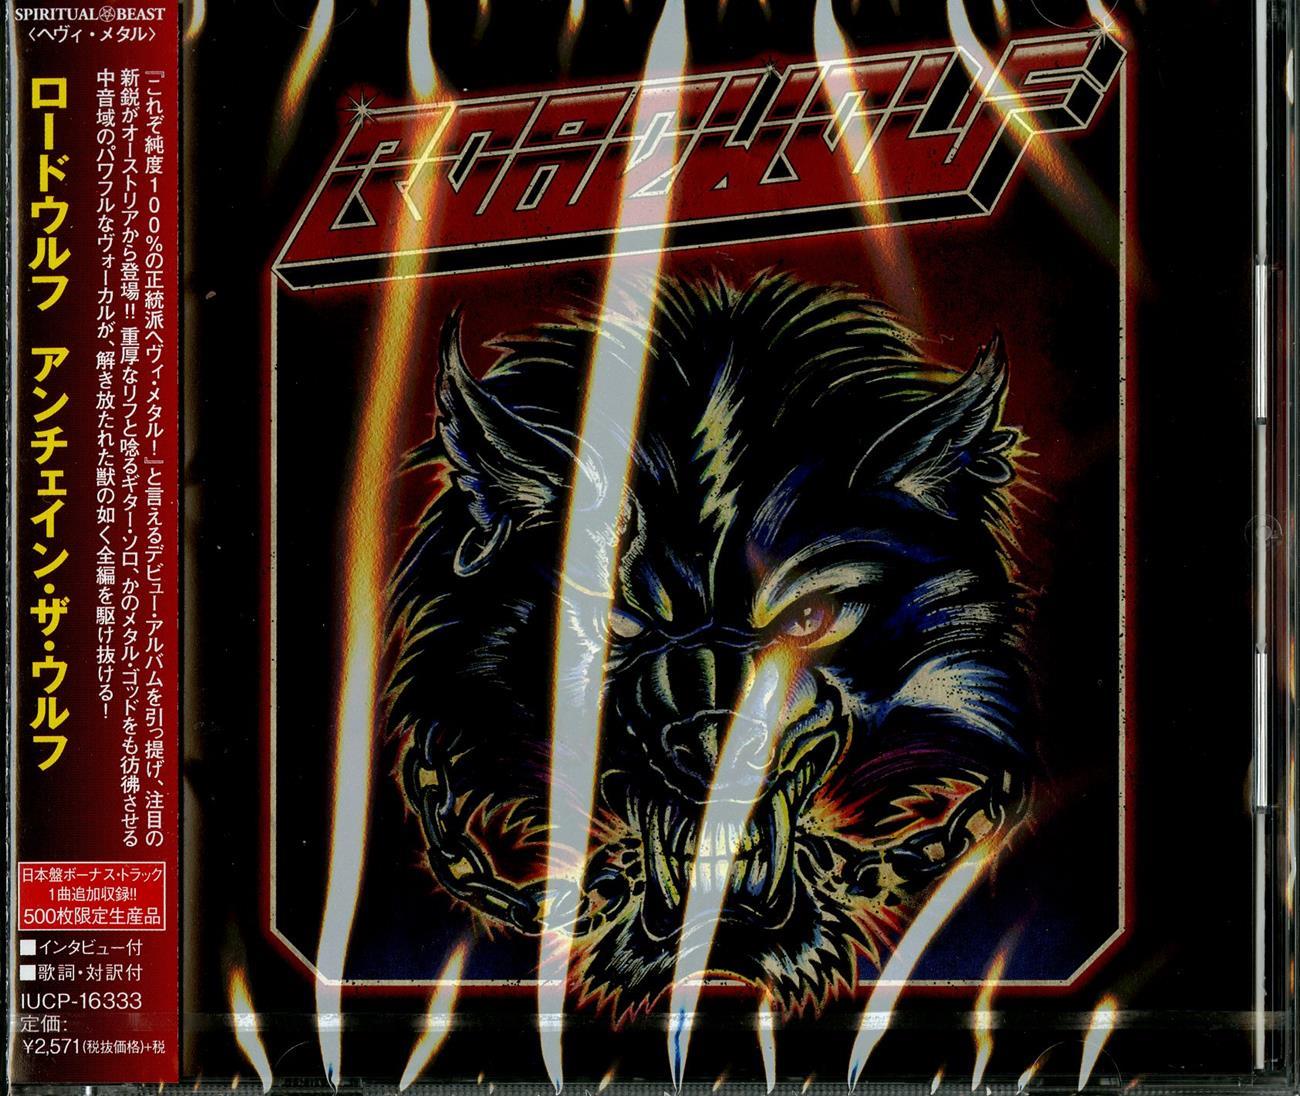 Metal CDs Page 206 – CDs Vinyl Japan Store